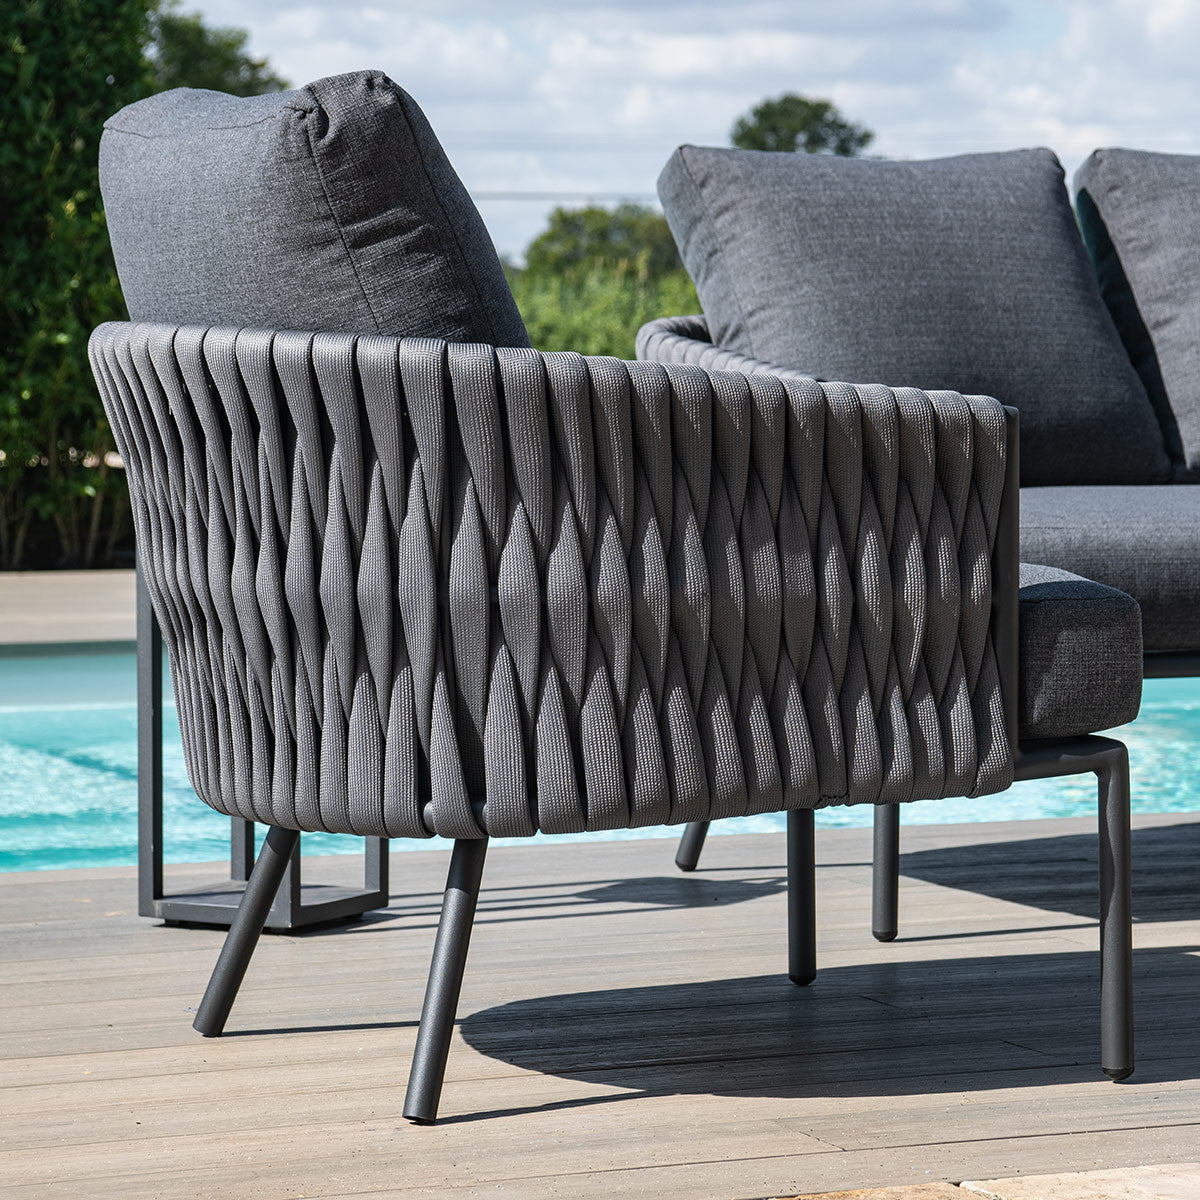 Marina Outdoor Fabric 3 Seat Sofa Set